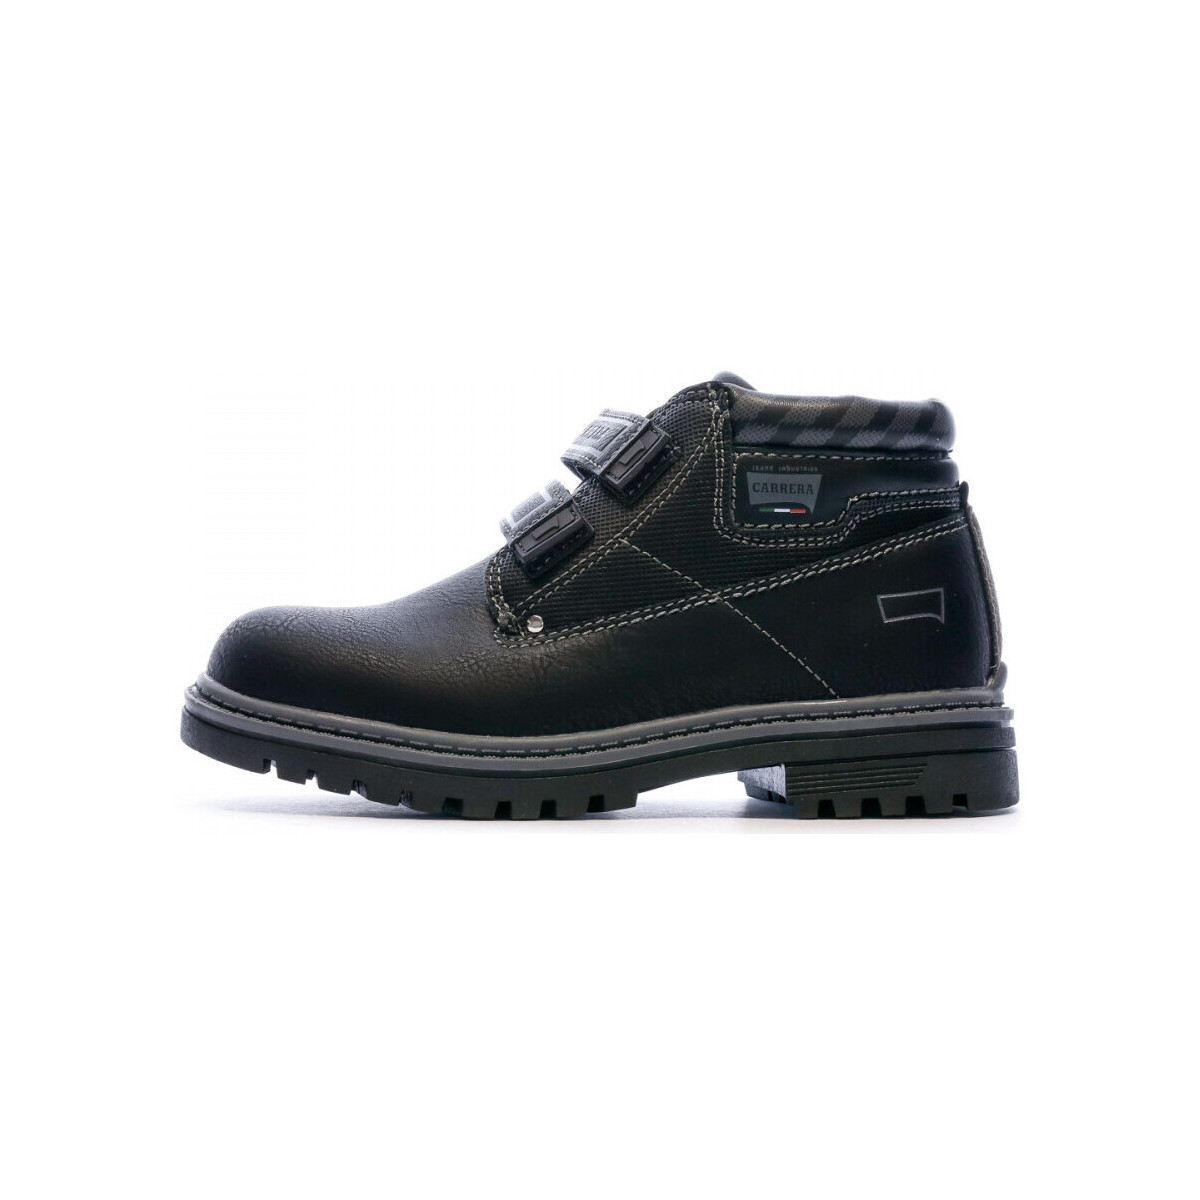 Chaussures Garçon Utilisez au minimum 1 lettre majuscule CAK121061 Noir